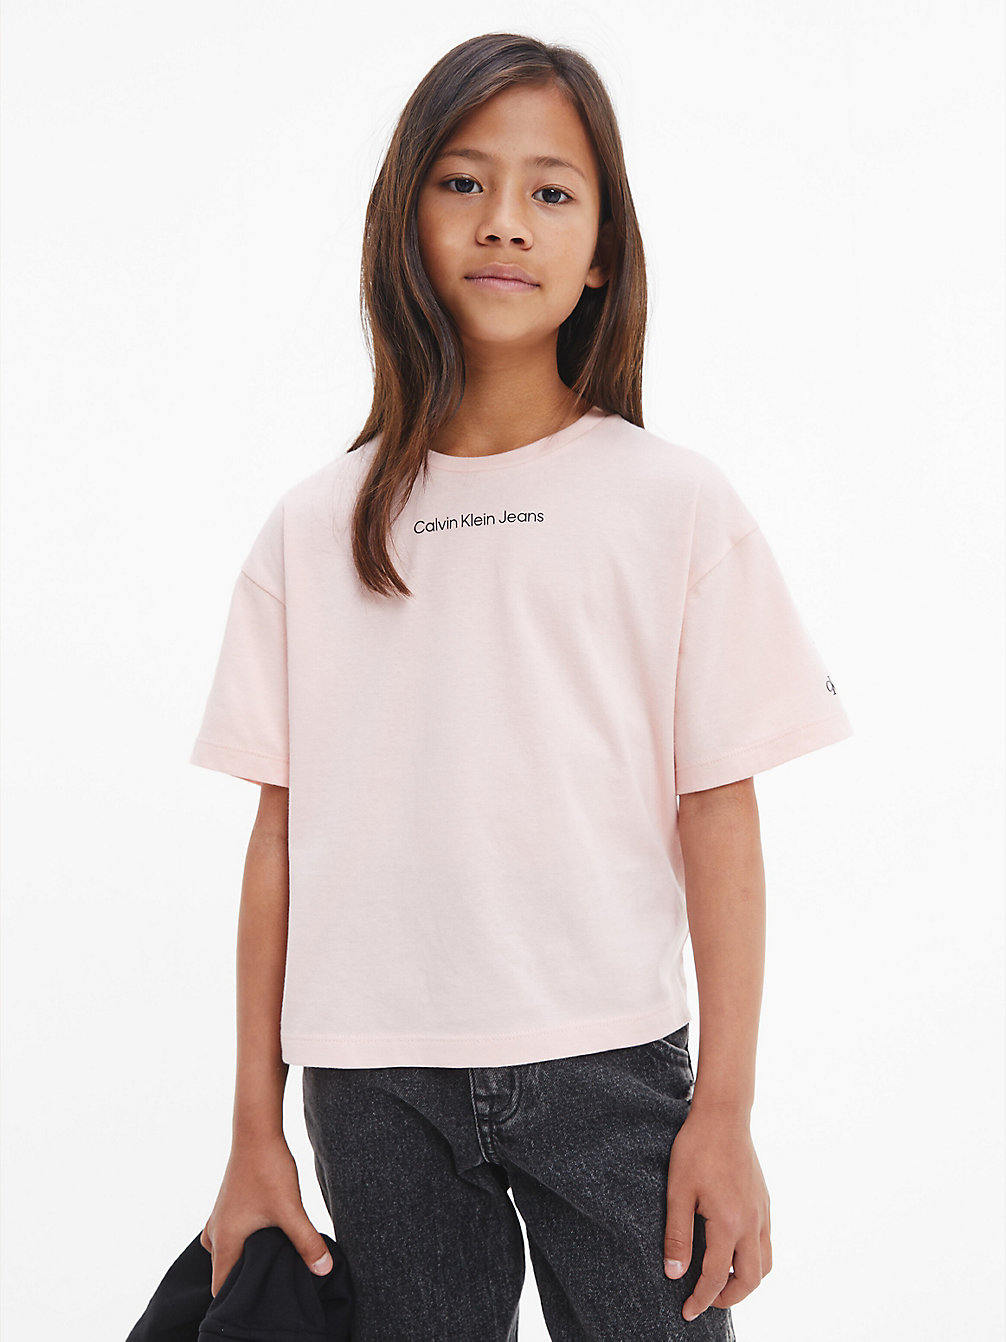 T-Shirt Dal Taglio Squadrato In Cotone Biologico > PINK BLUSH > undefined girls > Calvin Klein